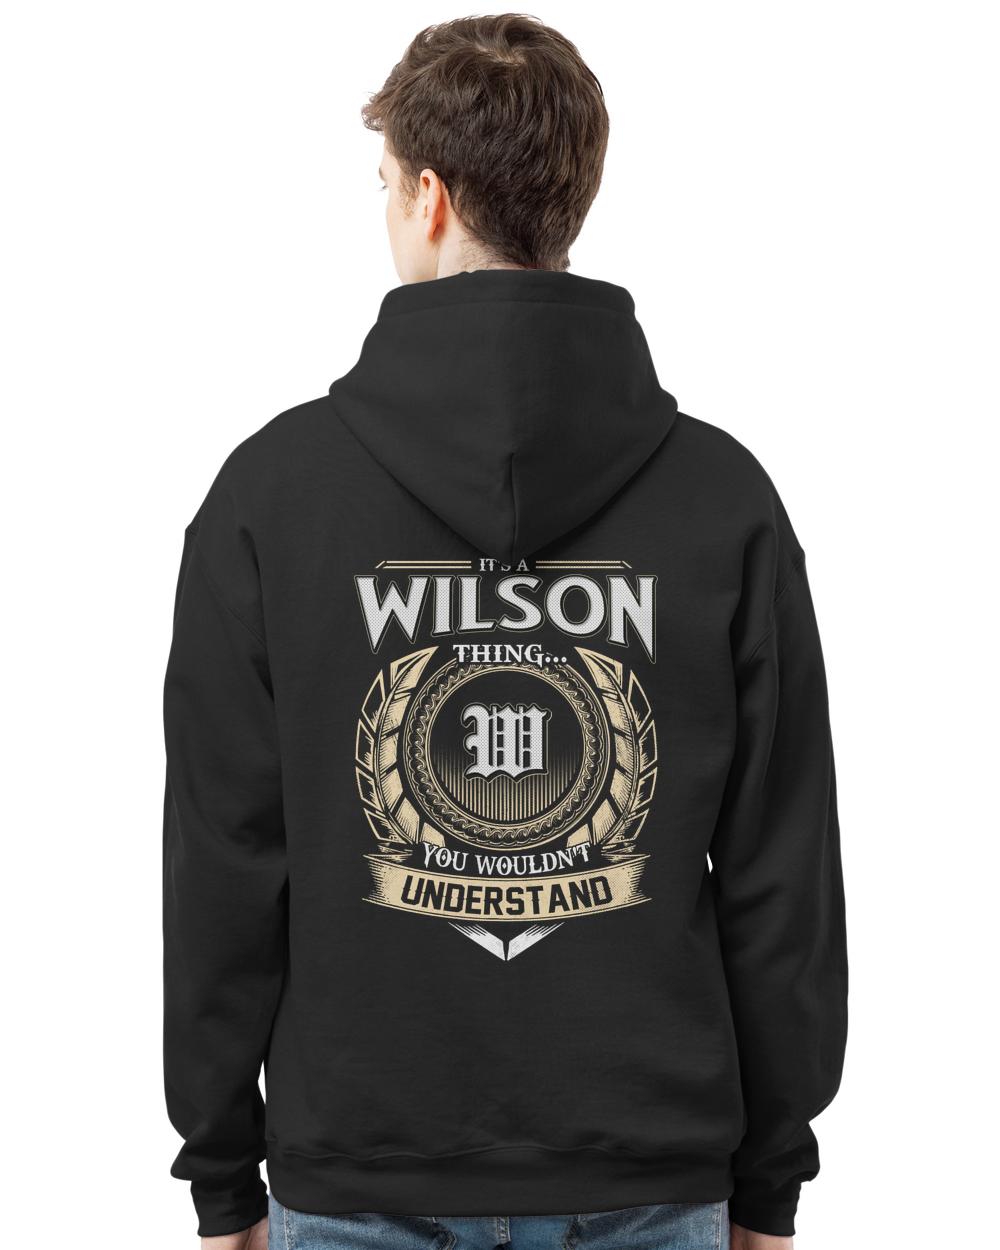 WILSON-13K-46-01